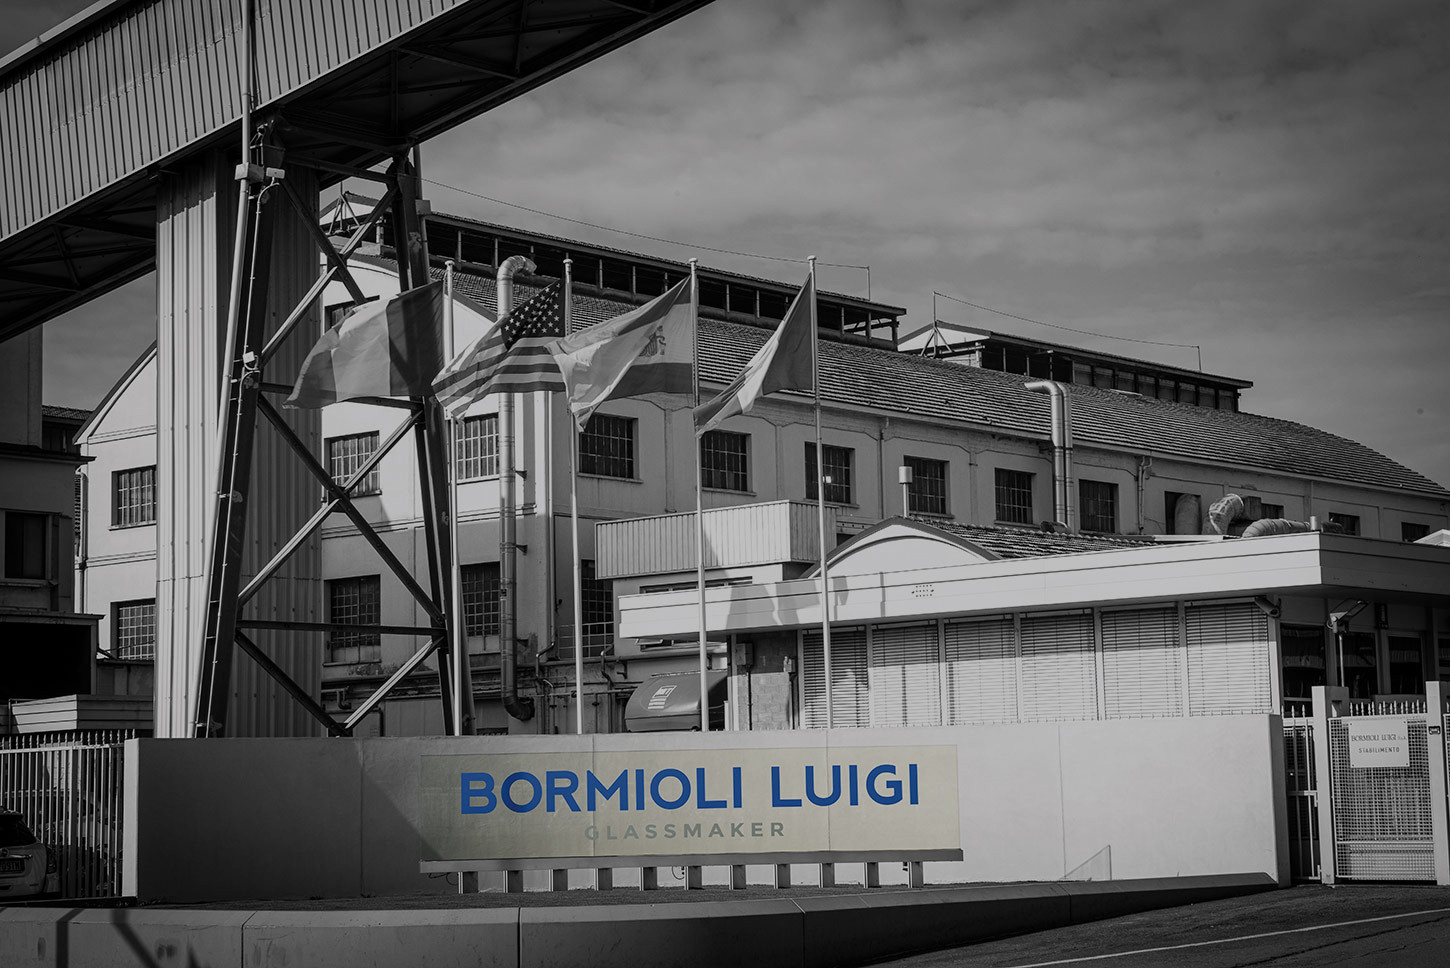 Bormioli Luigi aprirà la propria azienda in occasione di Parma la città del profumo